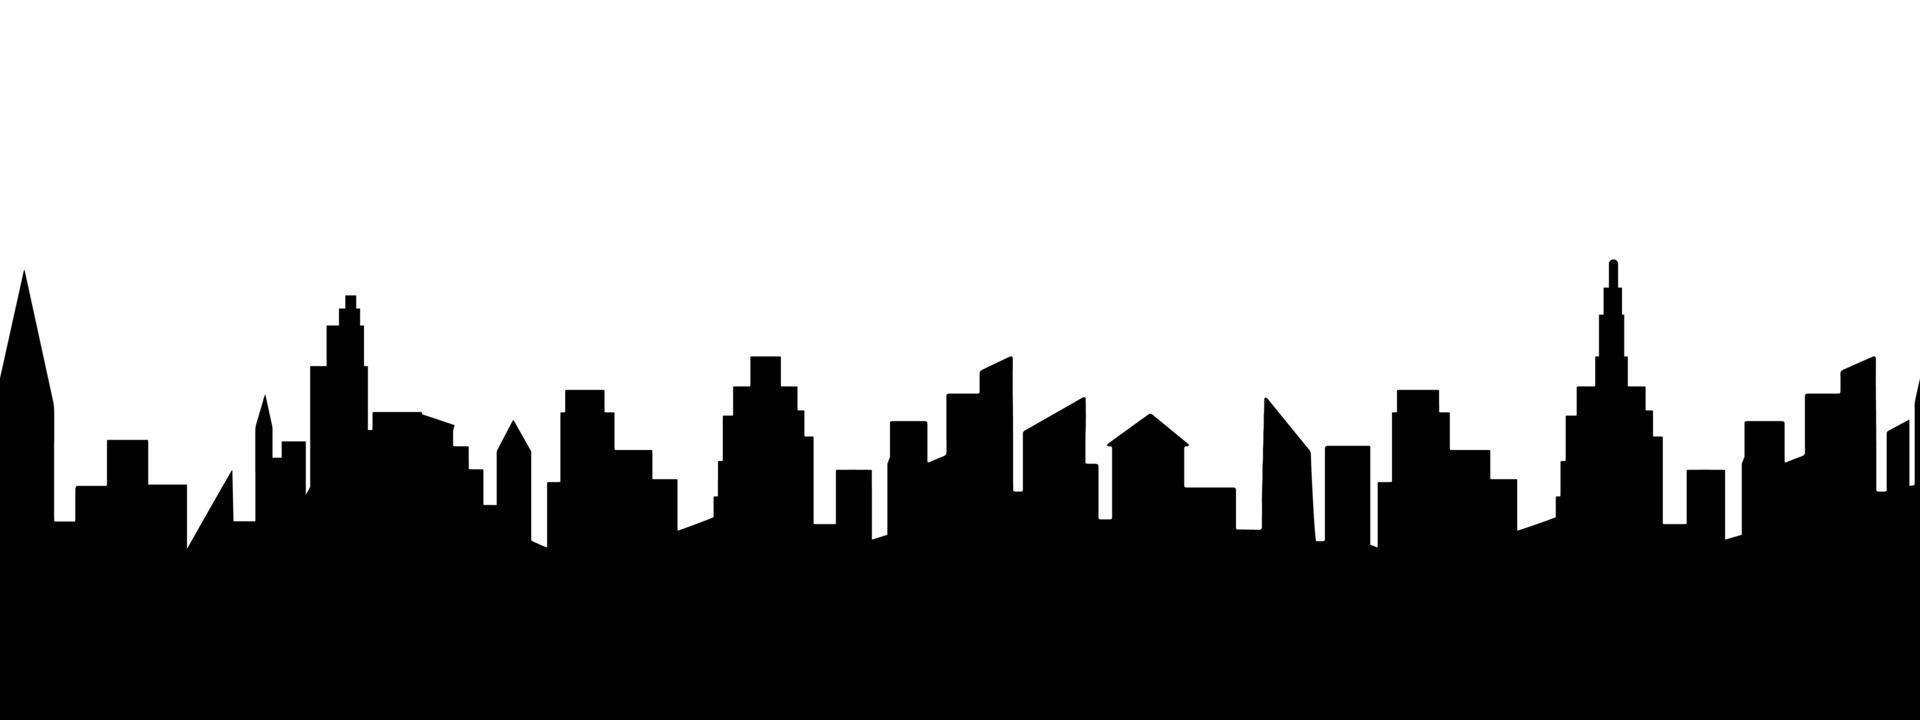 vista panorámica de la ciudad, ilustración vectorial gráfica plana. forma de sombra negra aislada simple, impresión abstracta de borde sin costuras. silueta de edificio urbano. vector